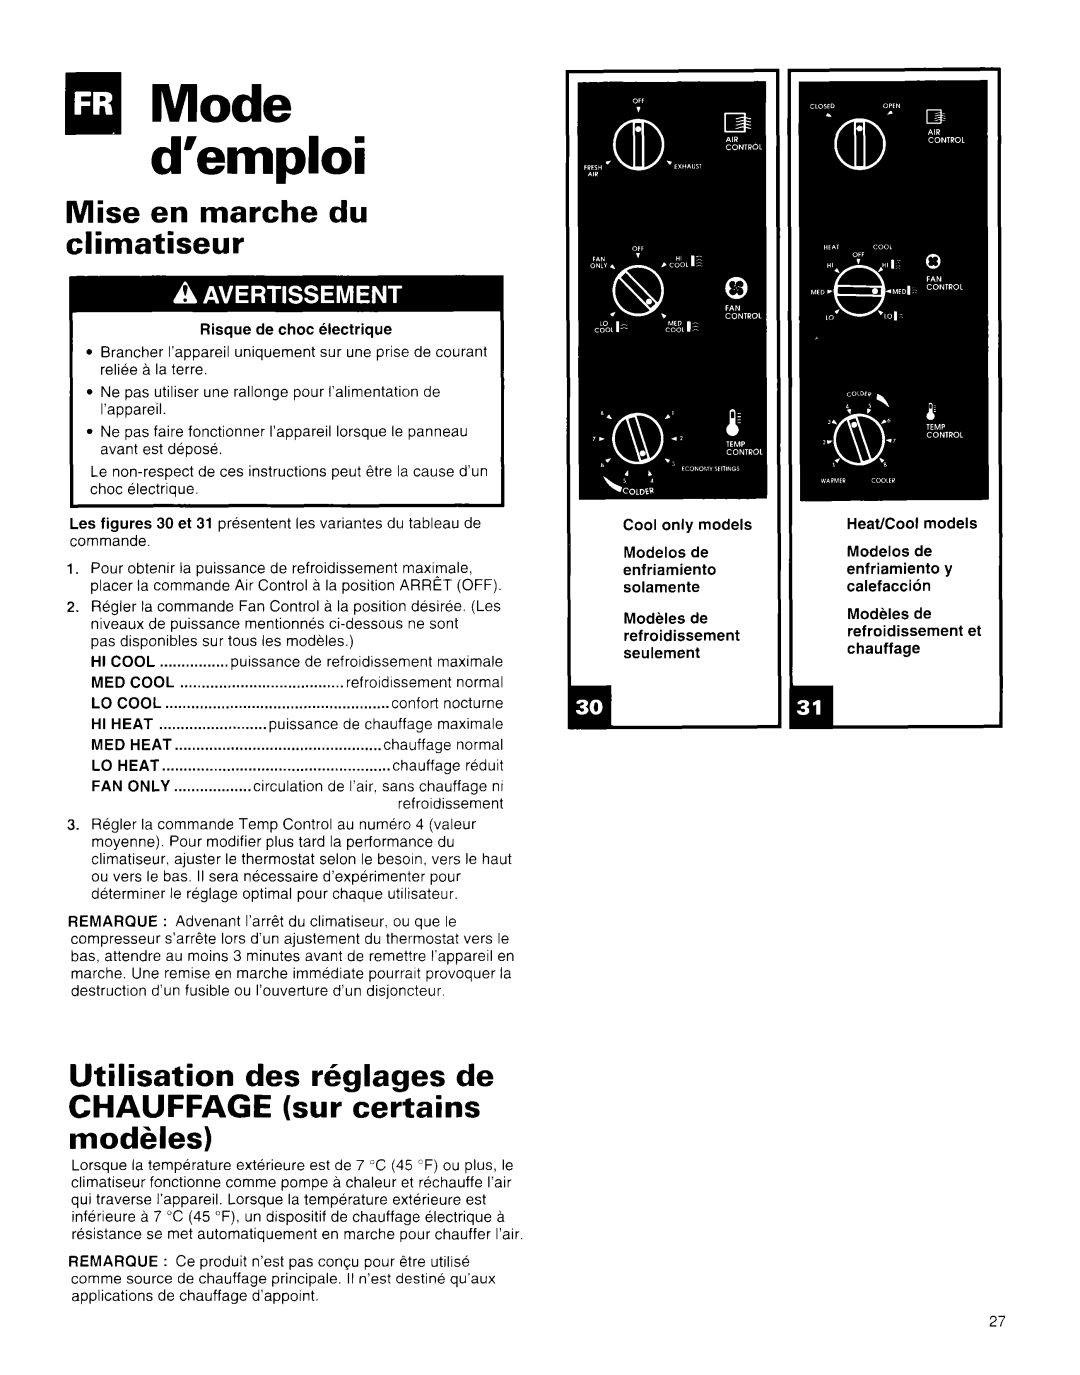 Whirlpool AR1800XA0 manual qlMode d’emploi, Mise en marche du climatiseur, Utilisation des kglages de 